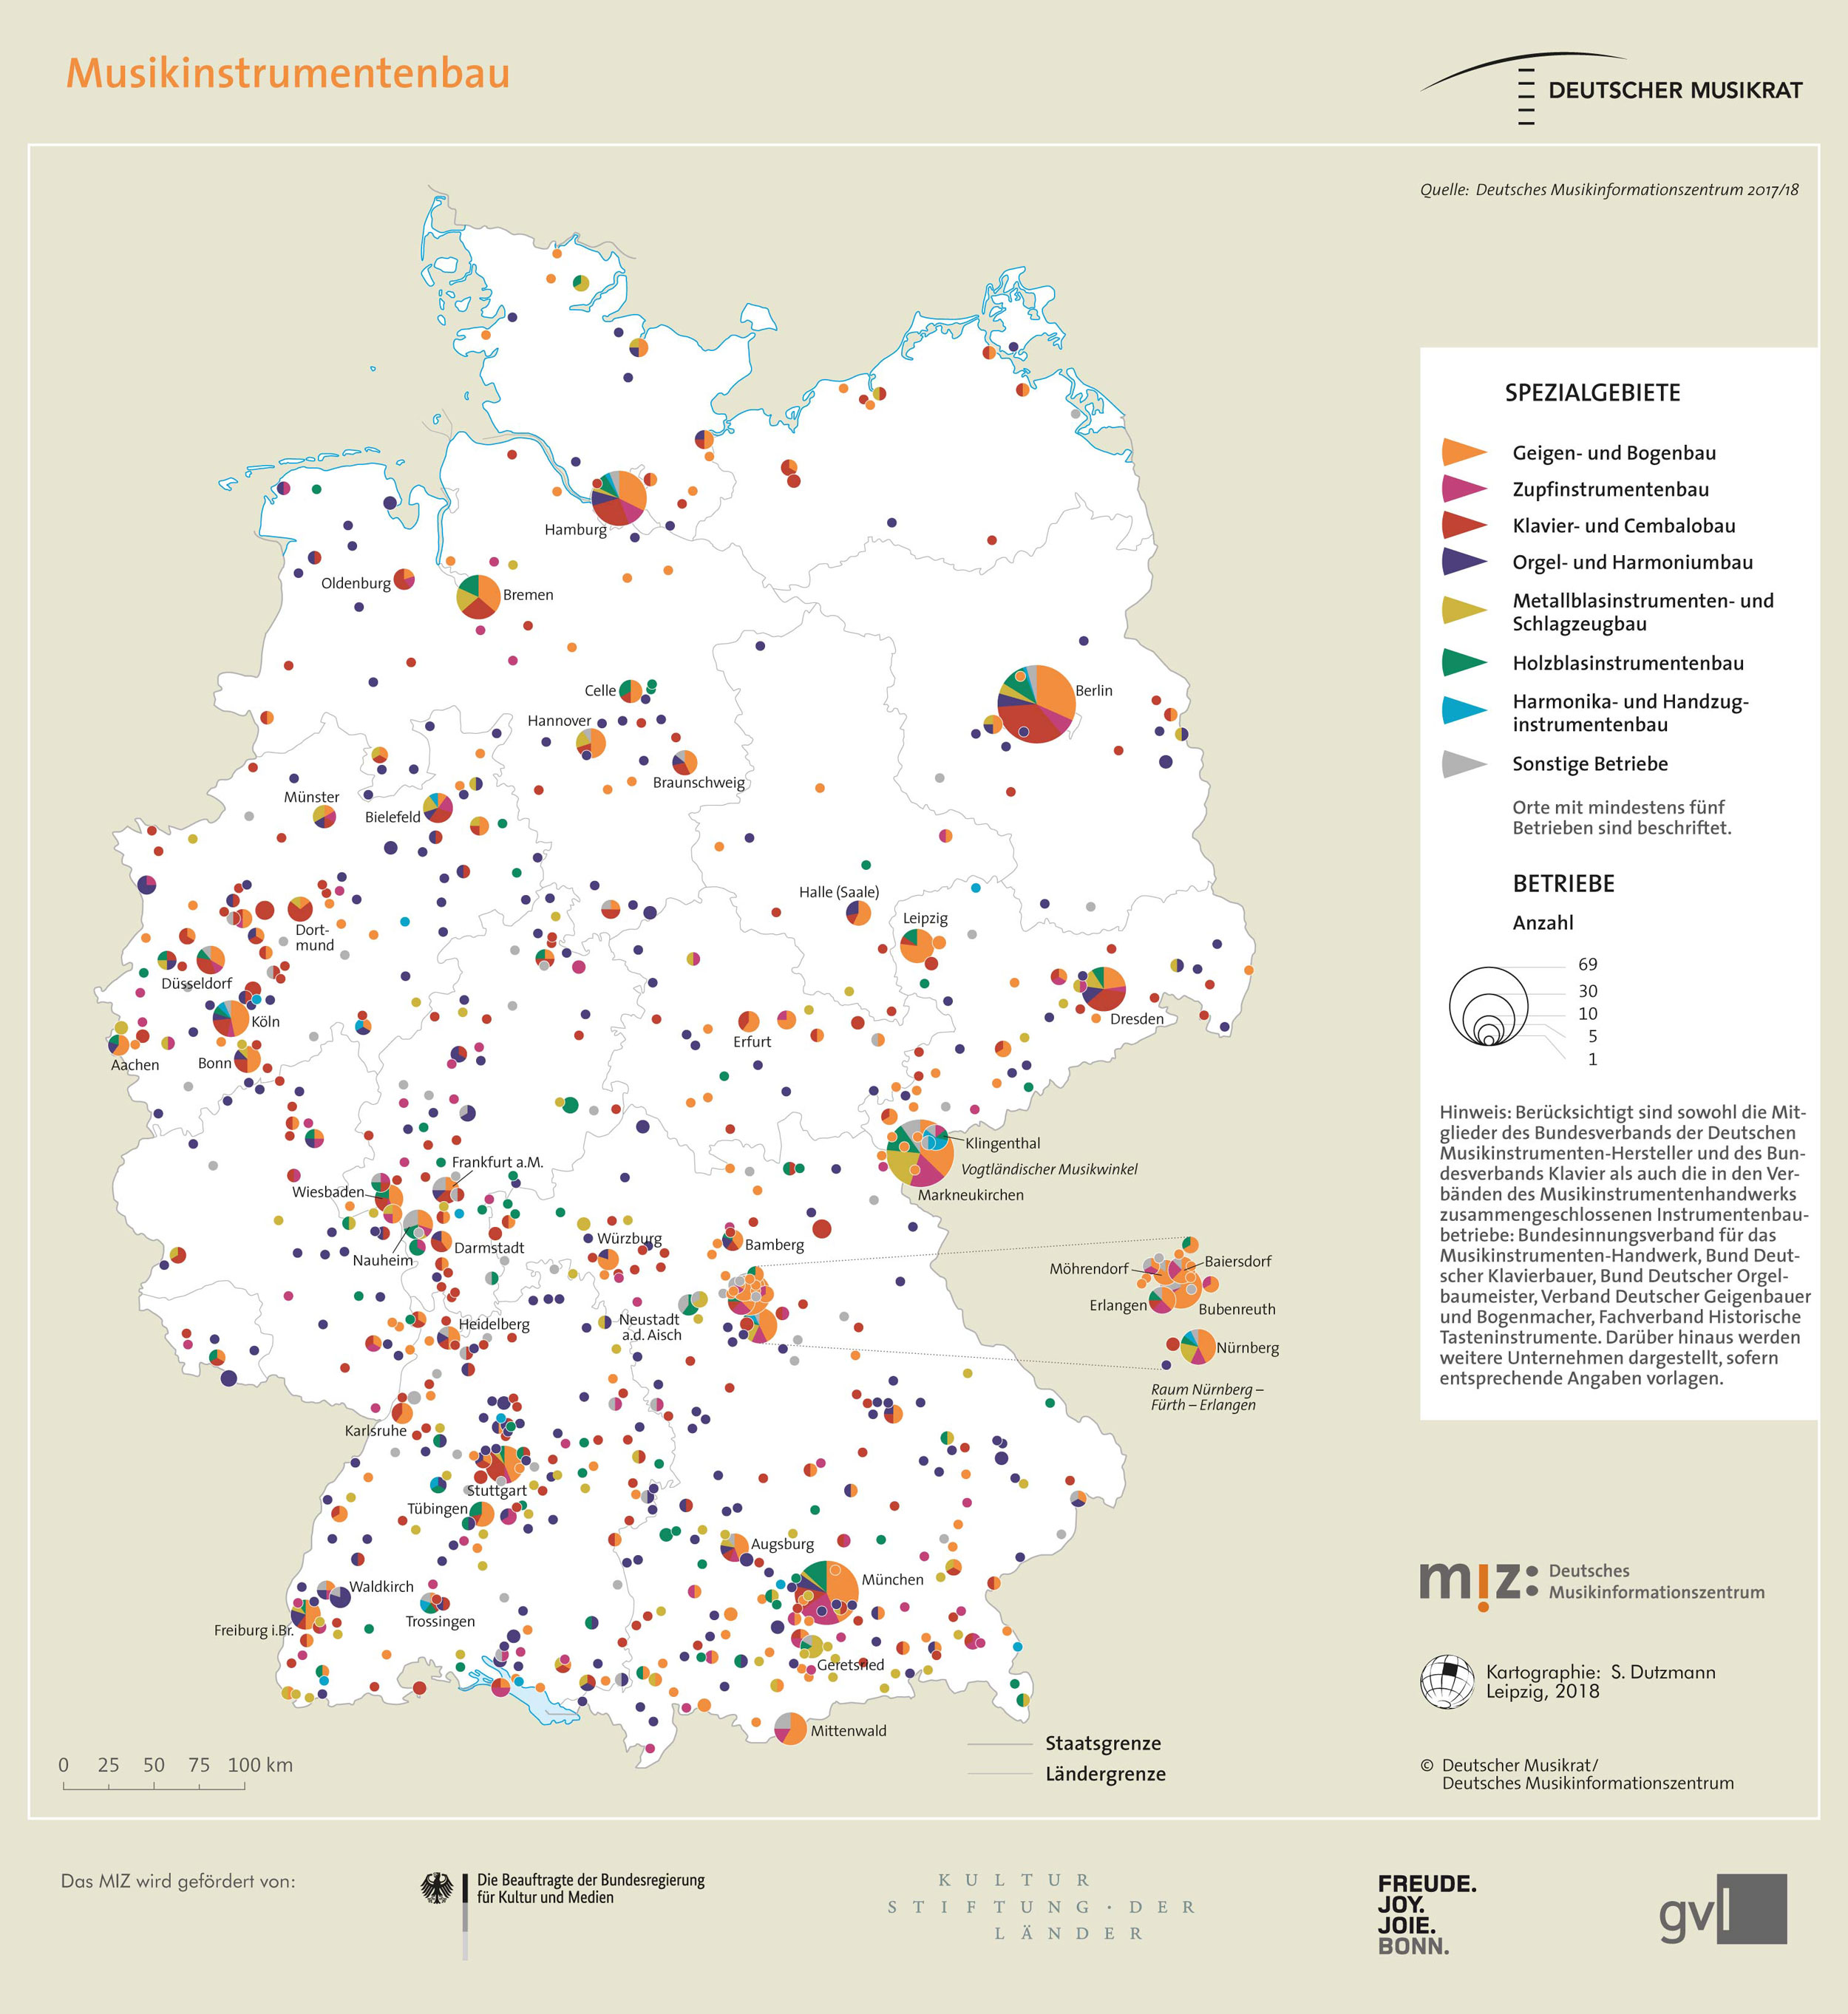 Topografie: Musikinstrumentenbau in Deutschland.